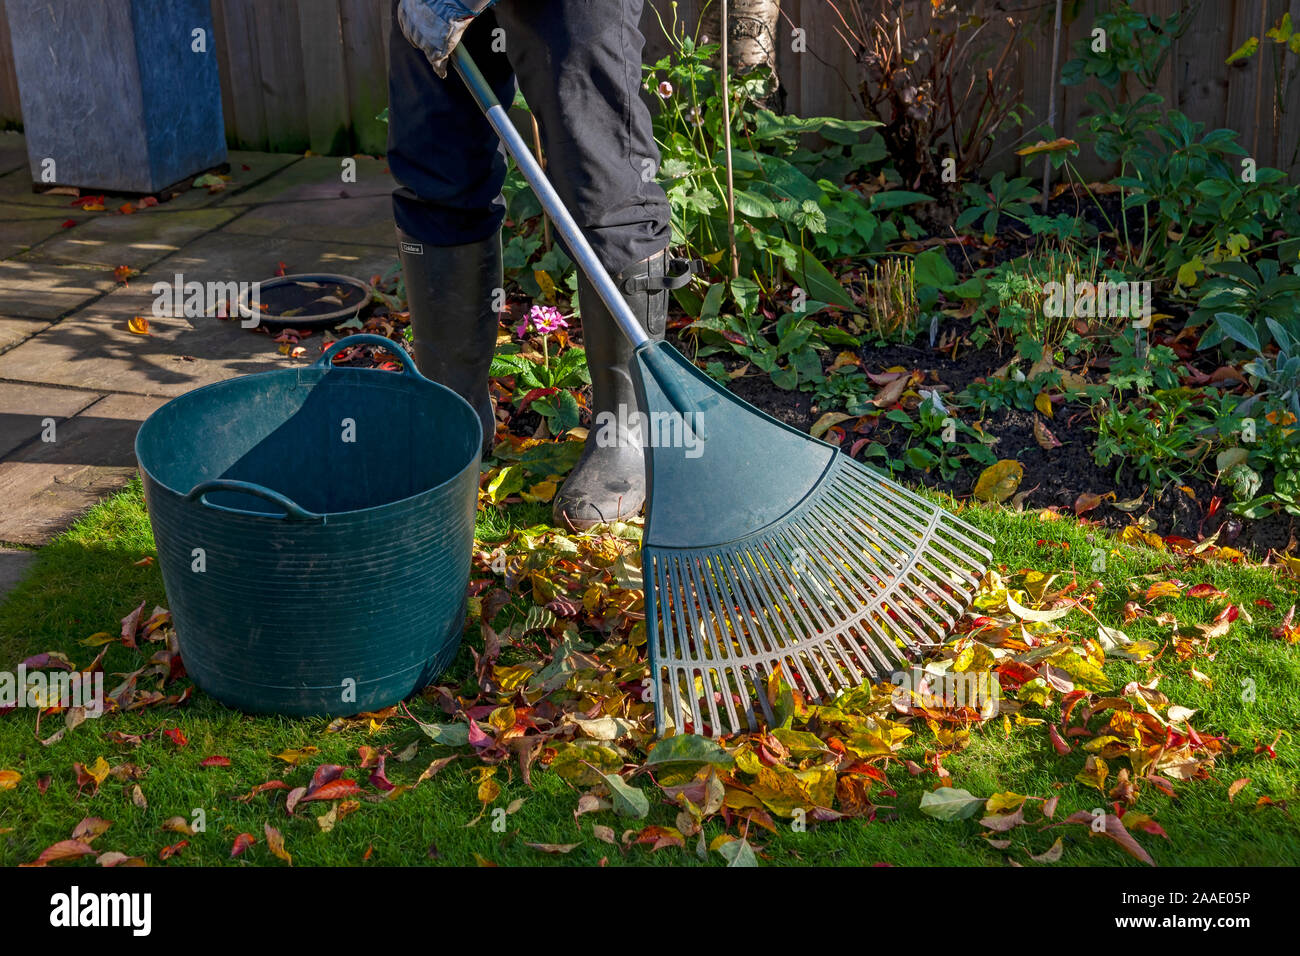 Nahaufnahme eines Gärtners, der im Herbst in England, Großbritannien, faulendes Laub von einem Rasen in einen Garten harkt und sammelt Stockfoto